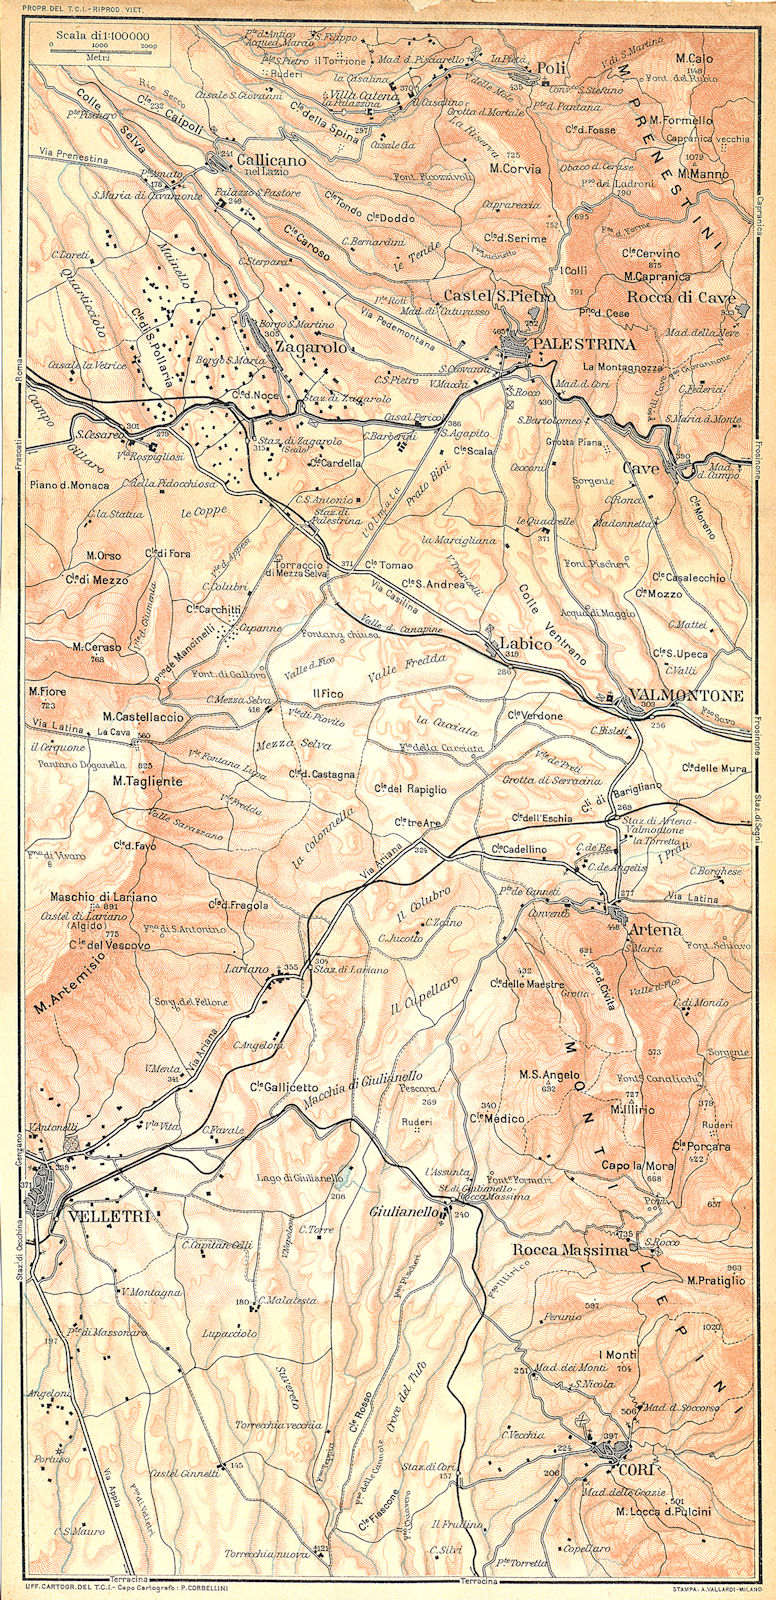 ITALY. Palestrina Velletri Cori gallicano Valmontone Zagarolo Artena 1924 map